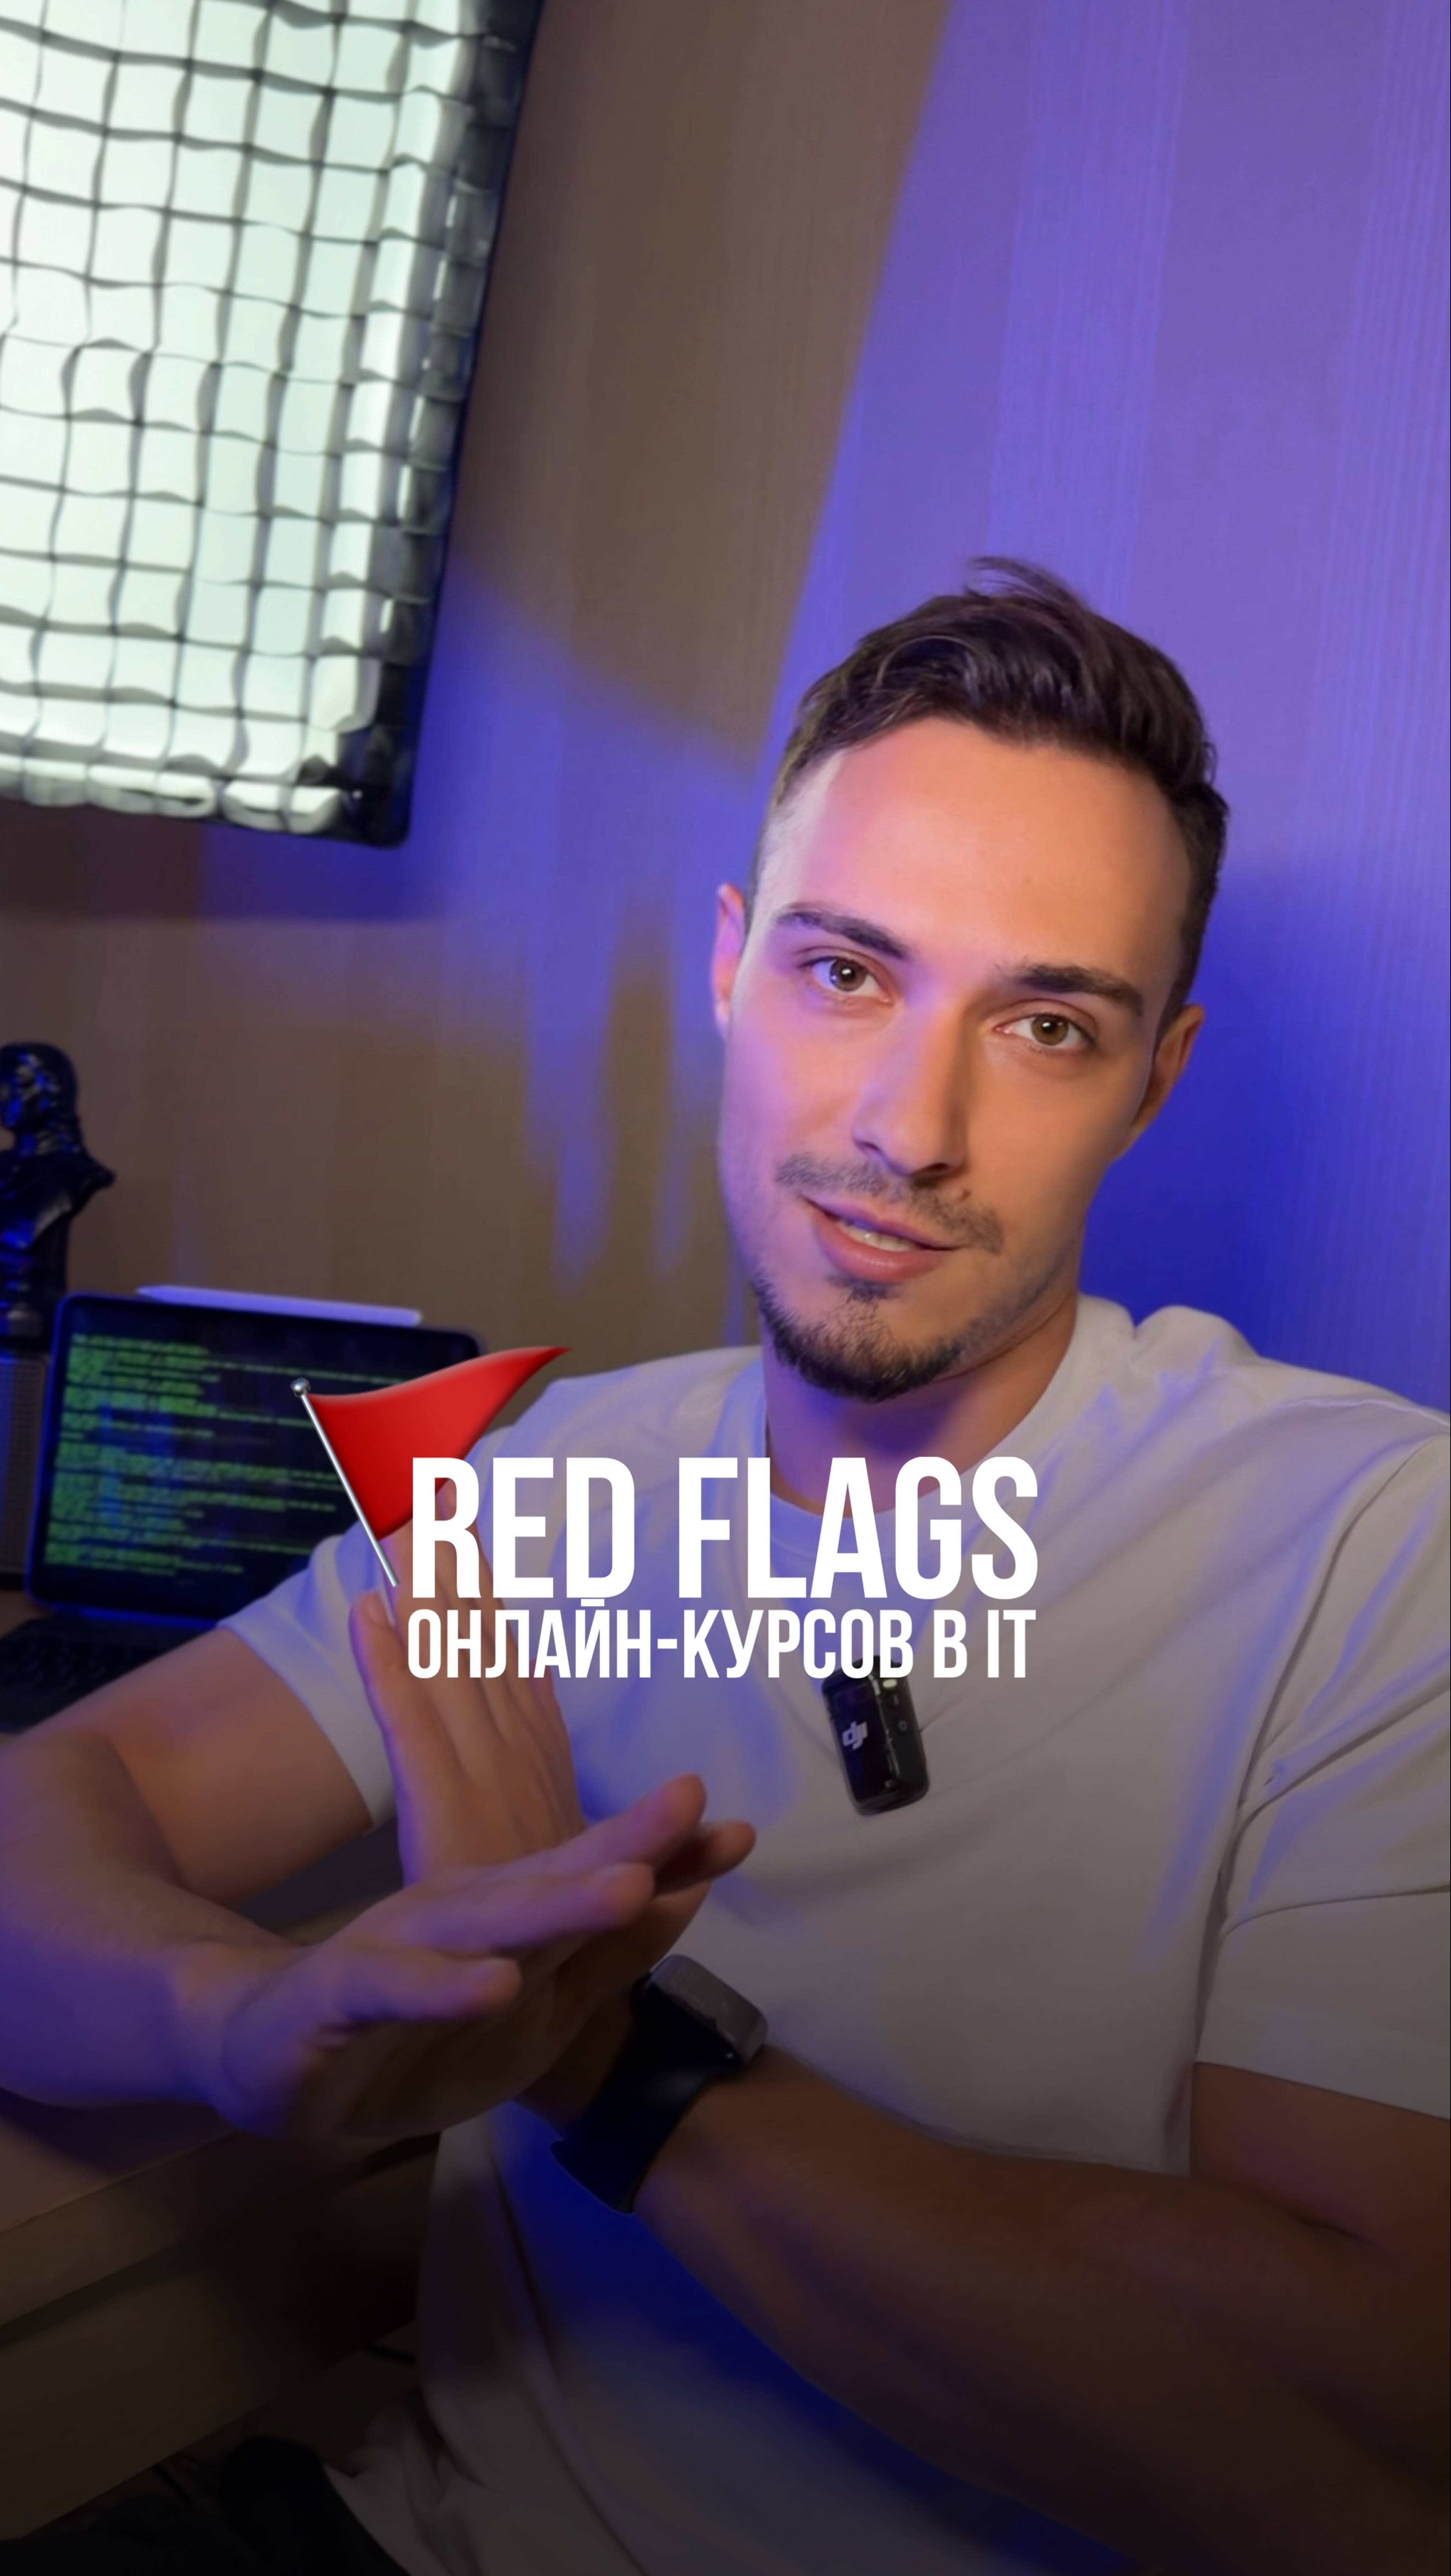 🚩 RED FLAGS ПРИ ВЫБОРЕ ОНЛАЙН-КУРСОВ В IT